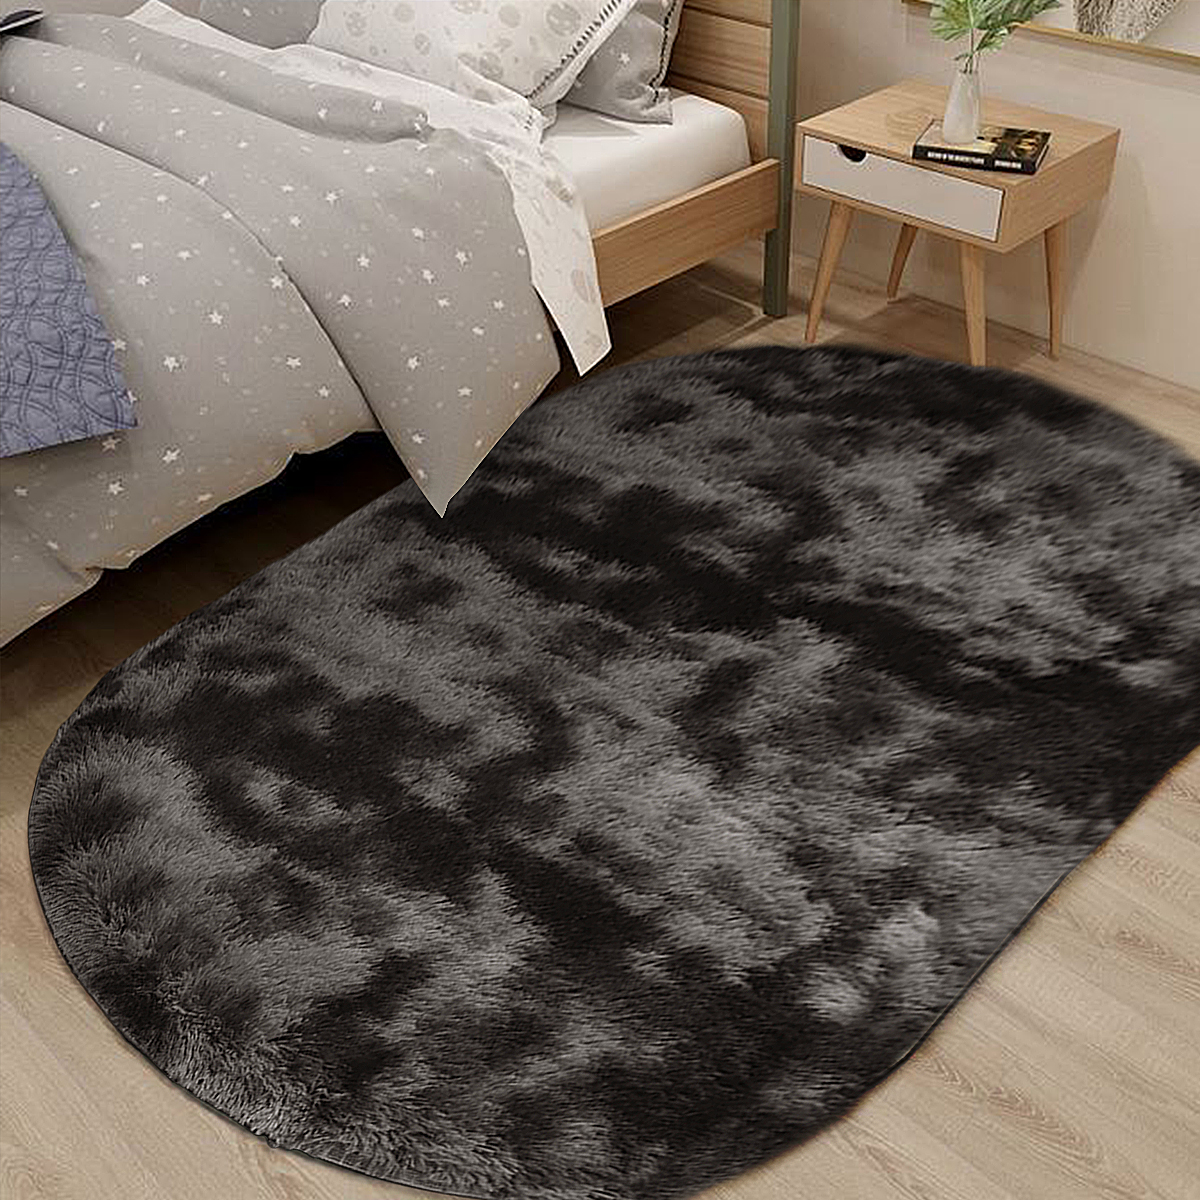 Long-Variegated-Tie-dye-Gradient-Carpet-Living-Room-Bedroom-Bedside-Blanket-Coffee-Table-Cushion-Ful-1730424-6